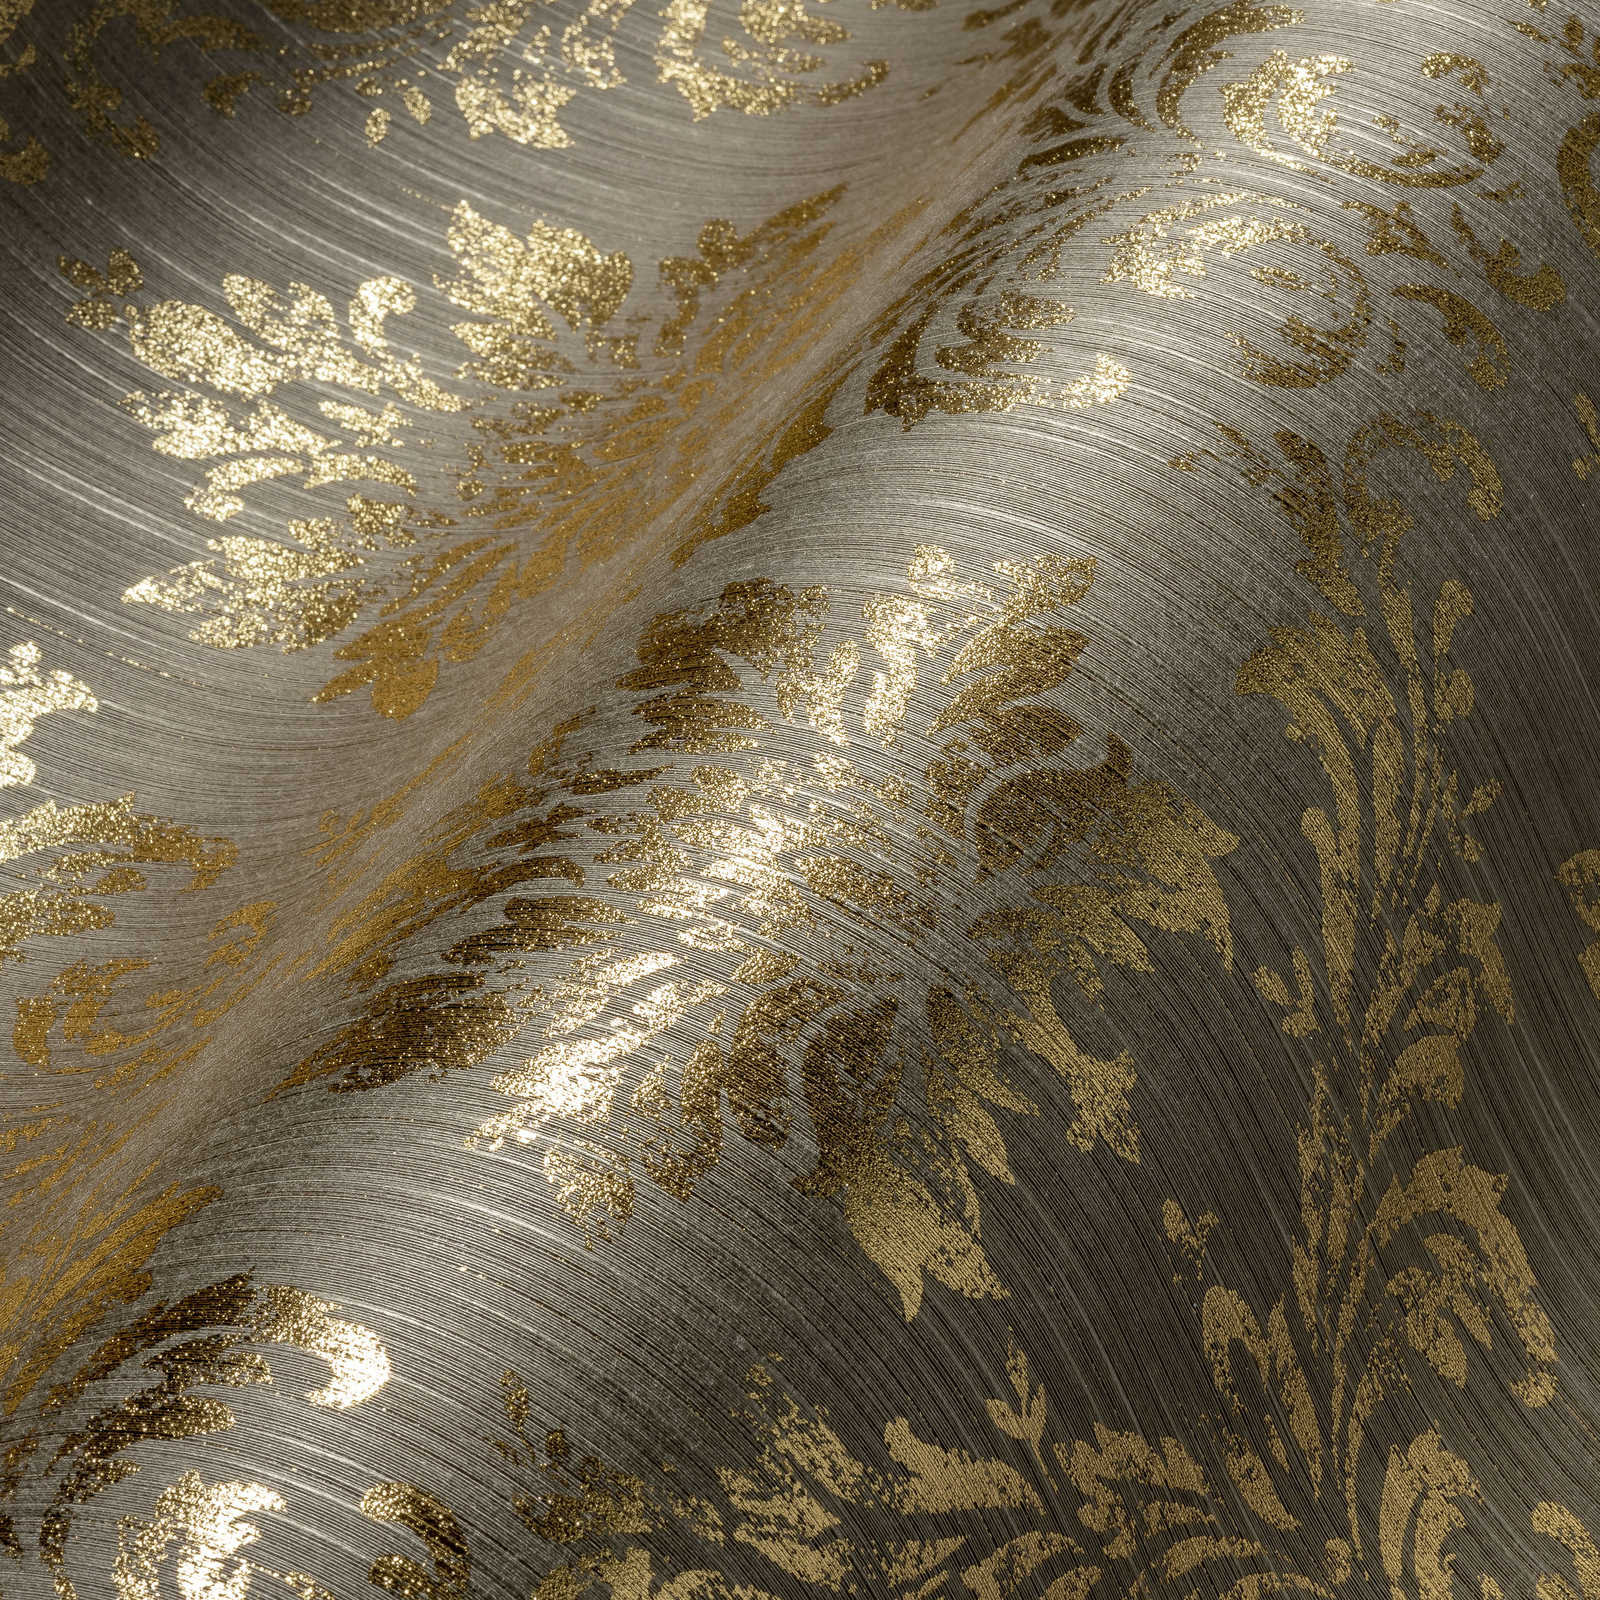             Behang met gouden ornamenten in used look - beige, goud
        